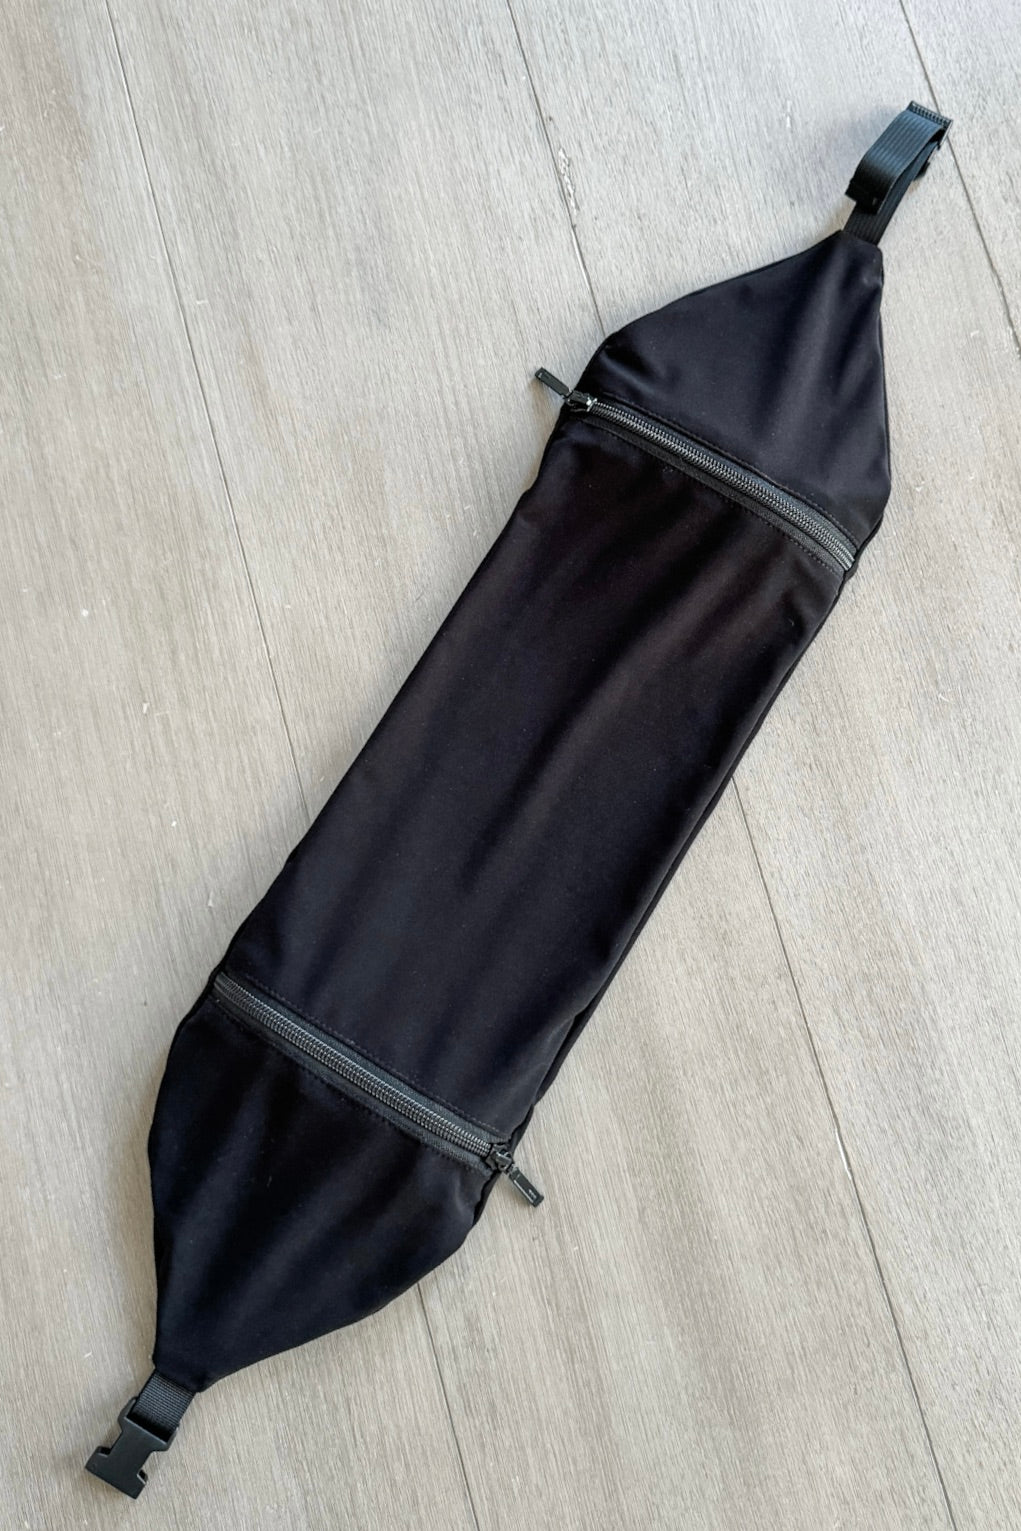 Packable Headrest in Black colour